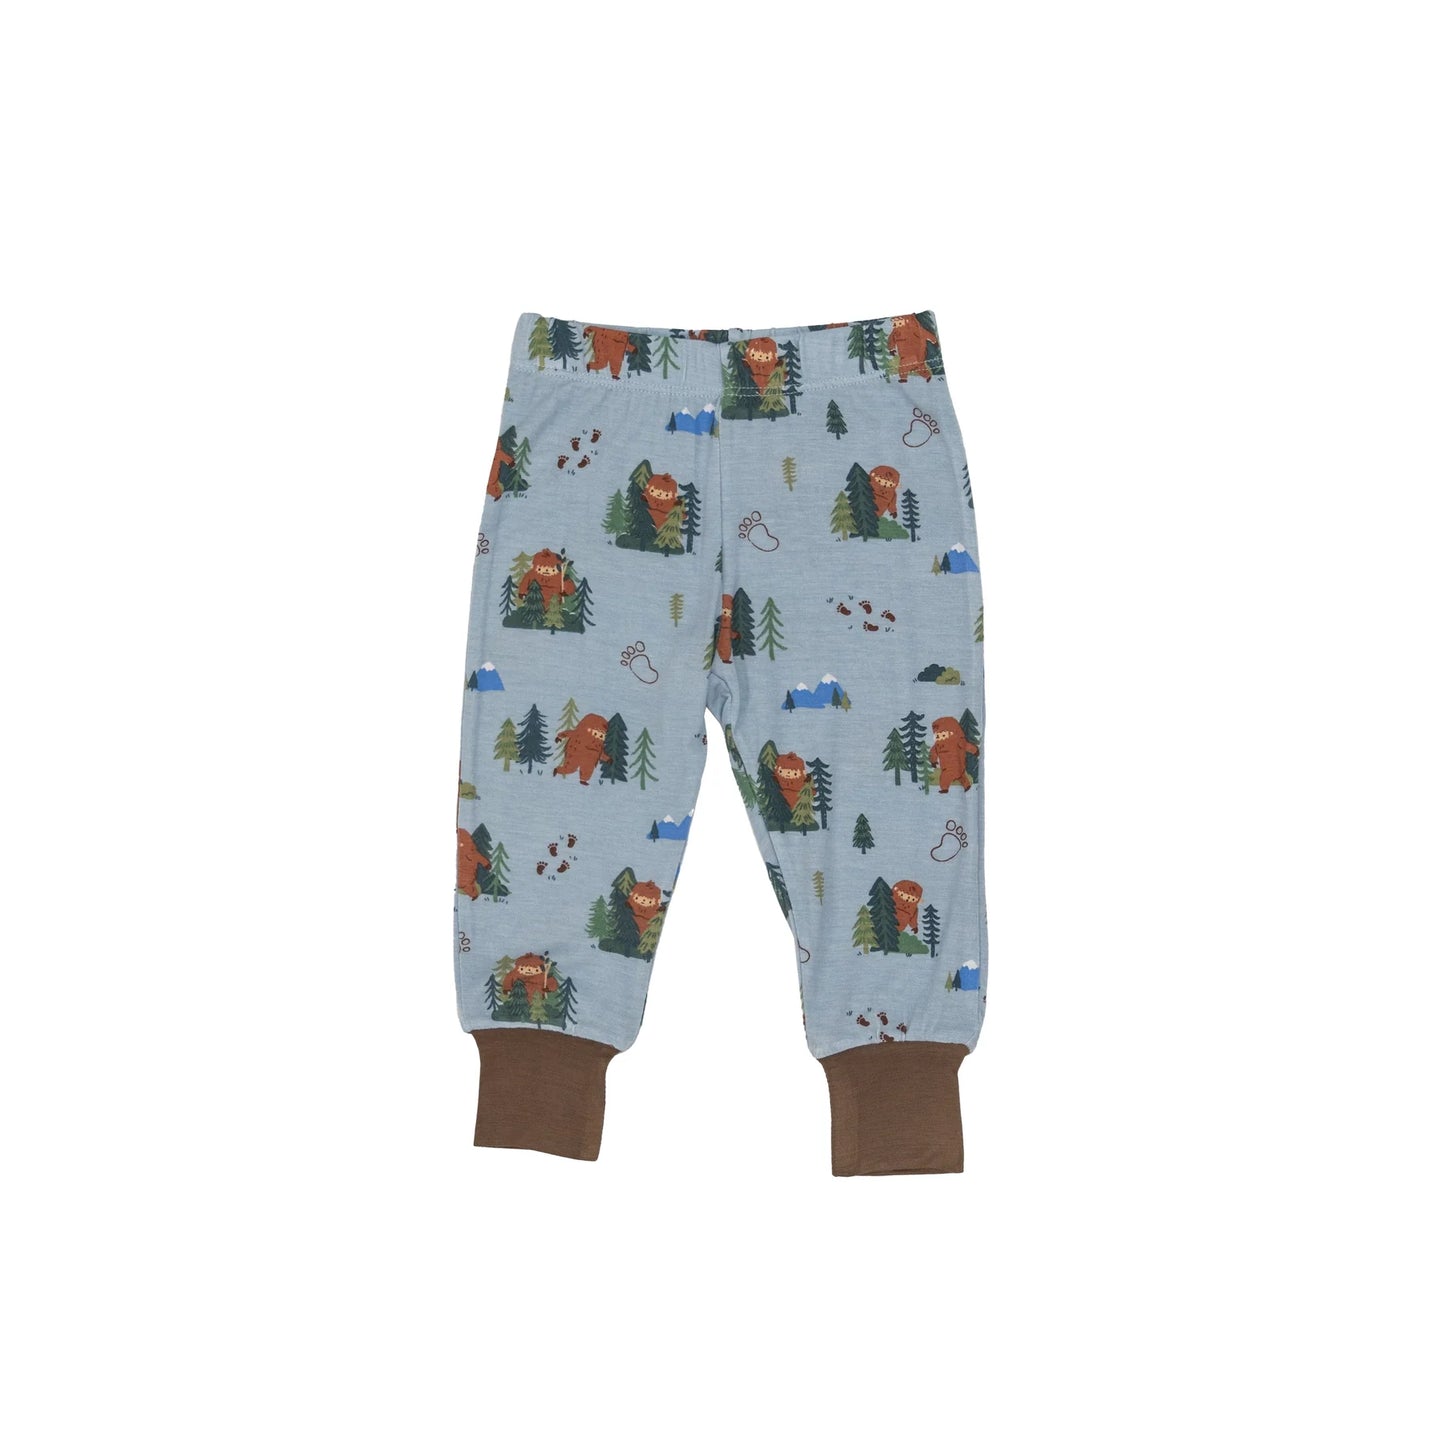 2 Piece Pajamas - Bigfoot